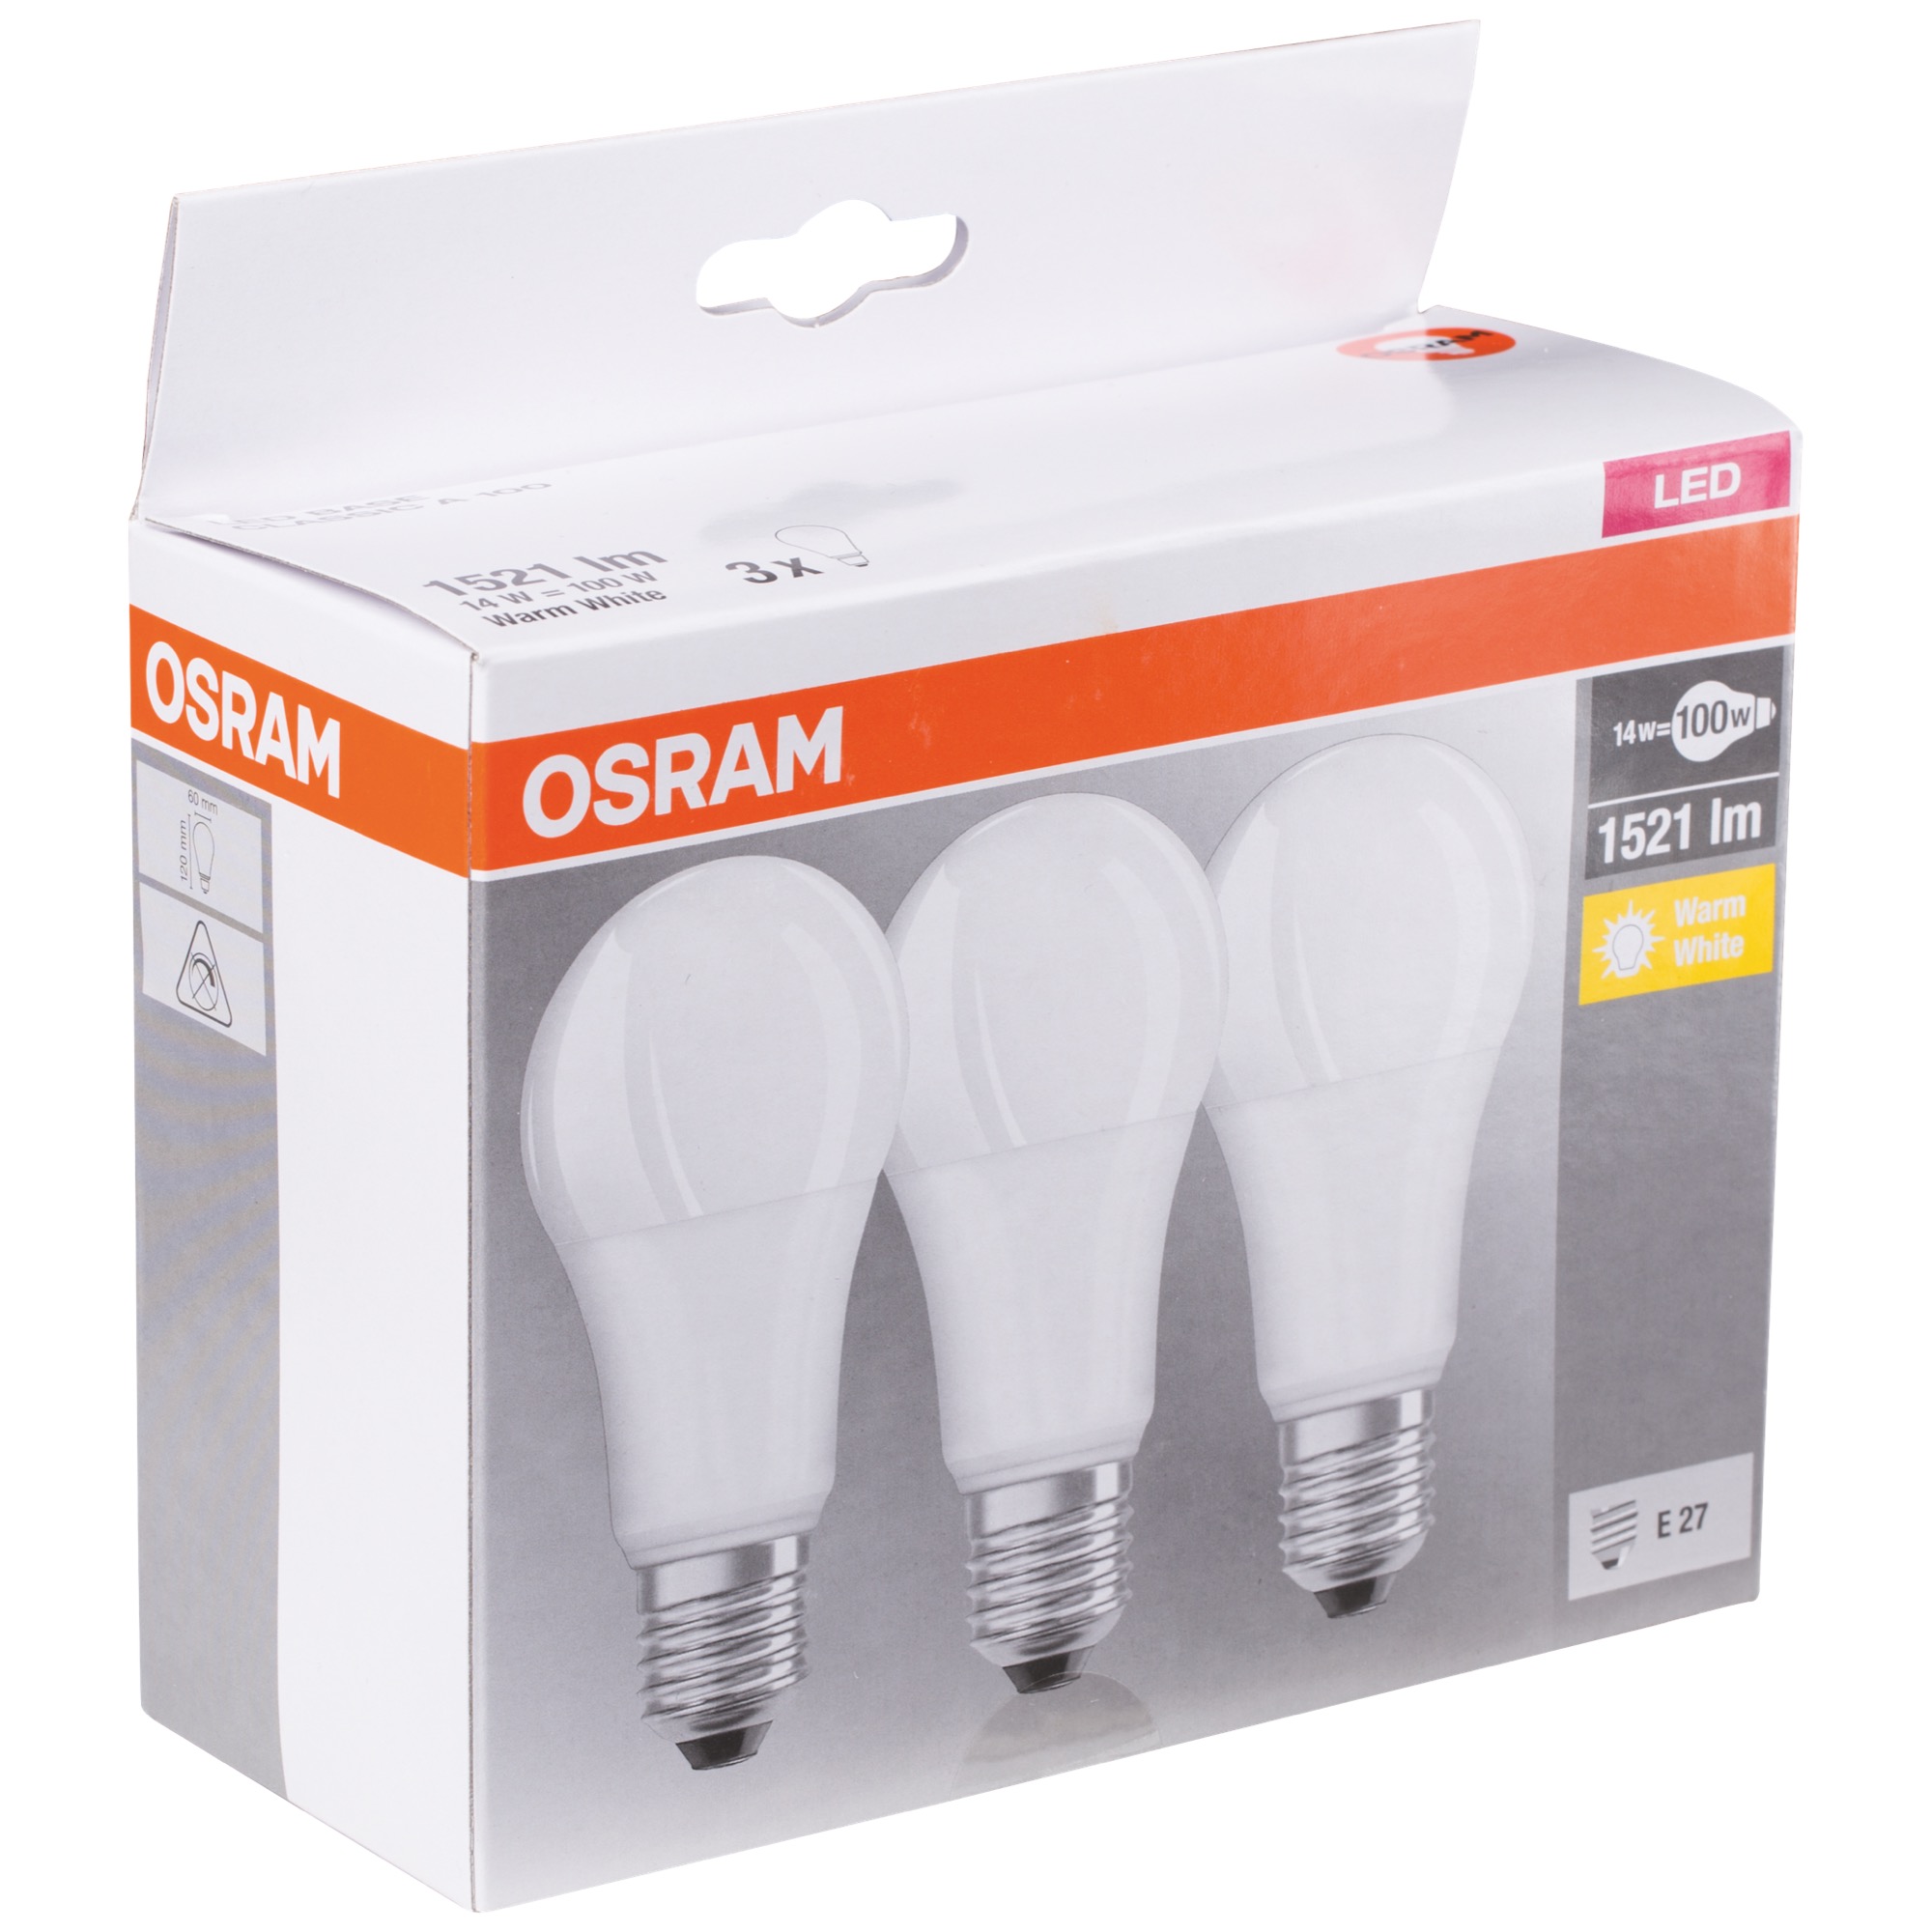 Osram LED Base Classic A100 14W E27 3ks